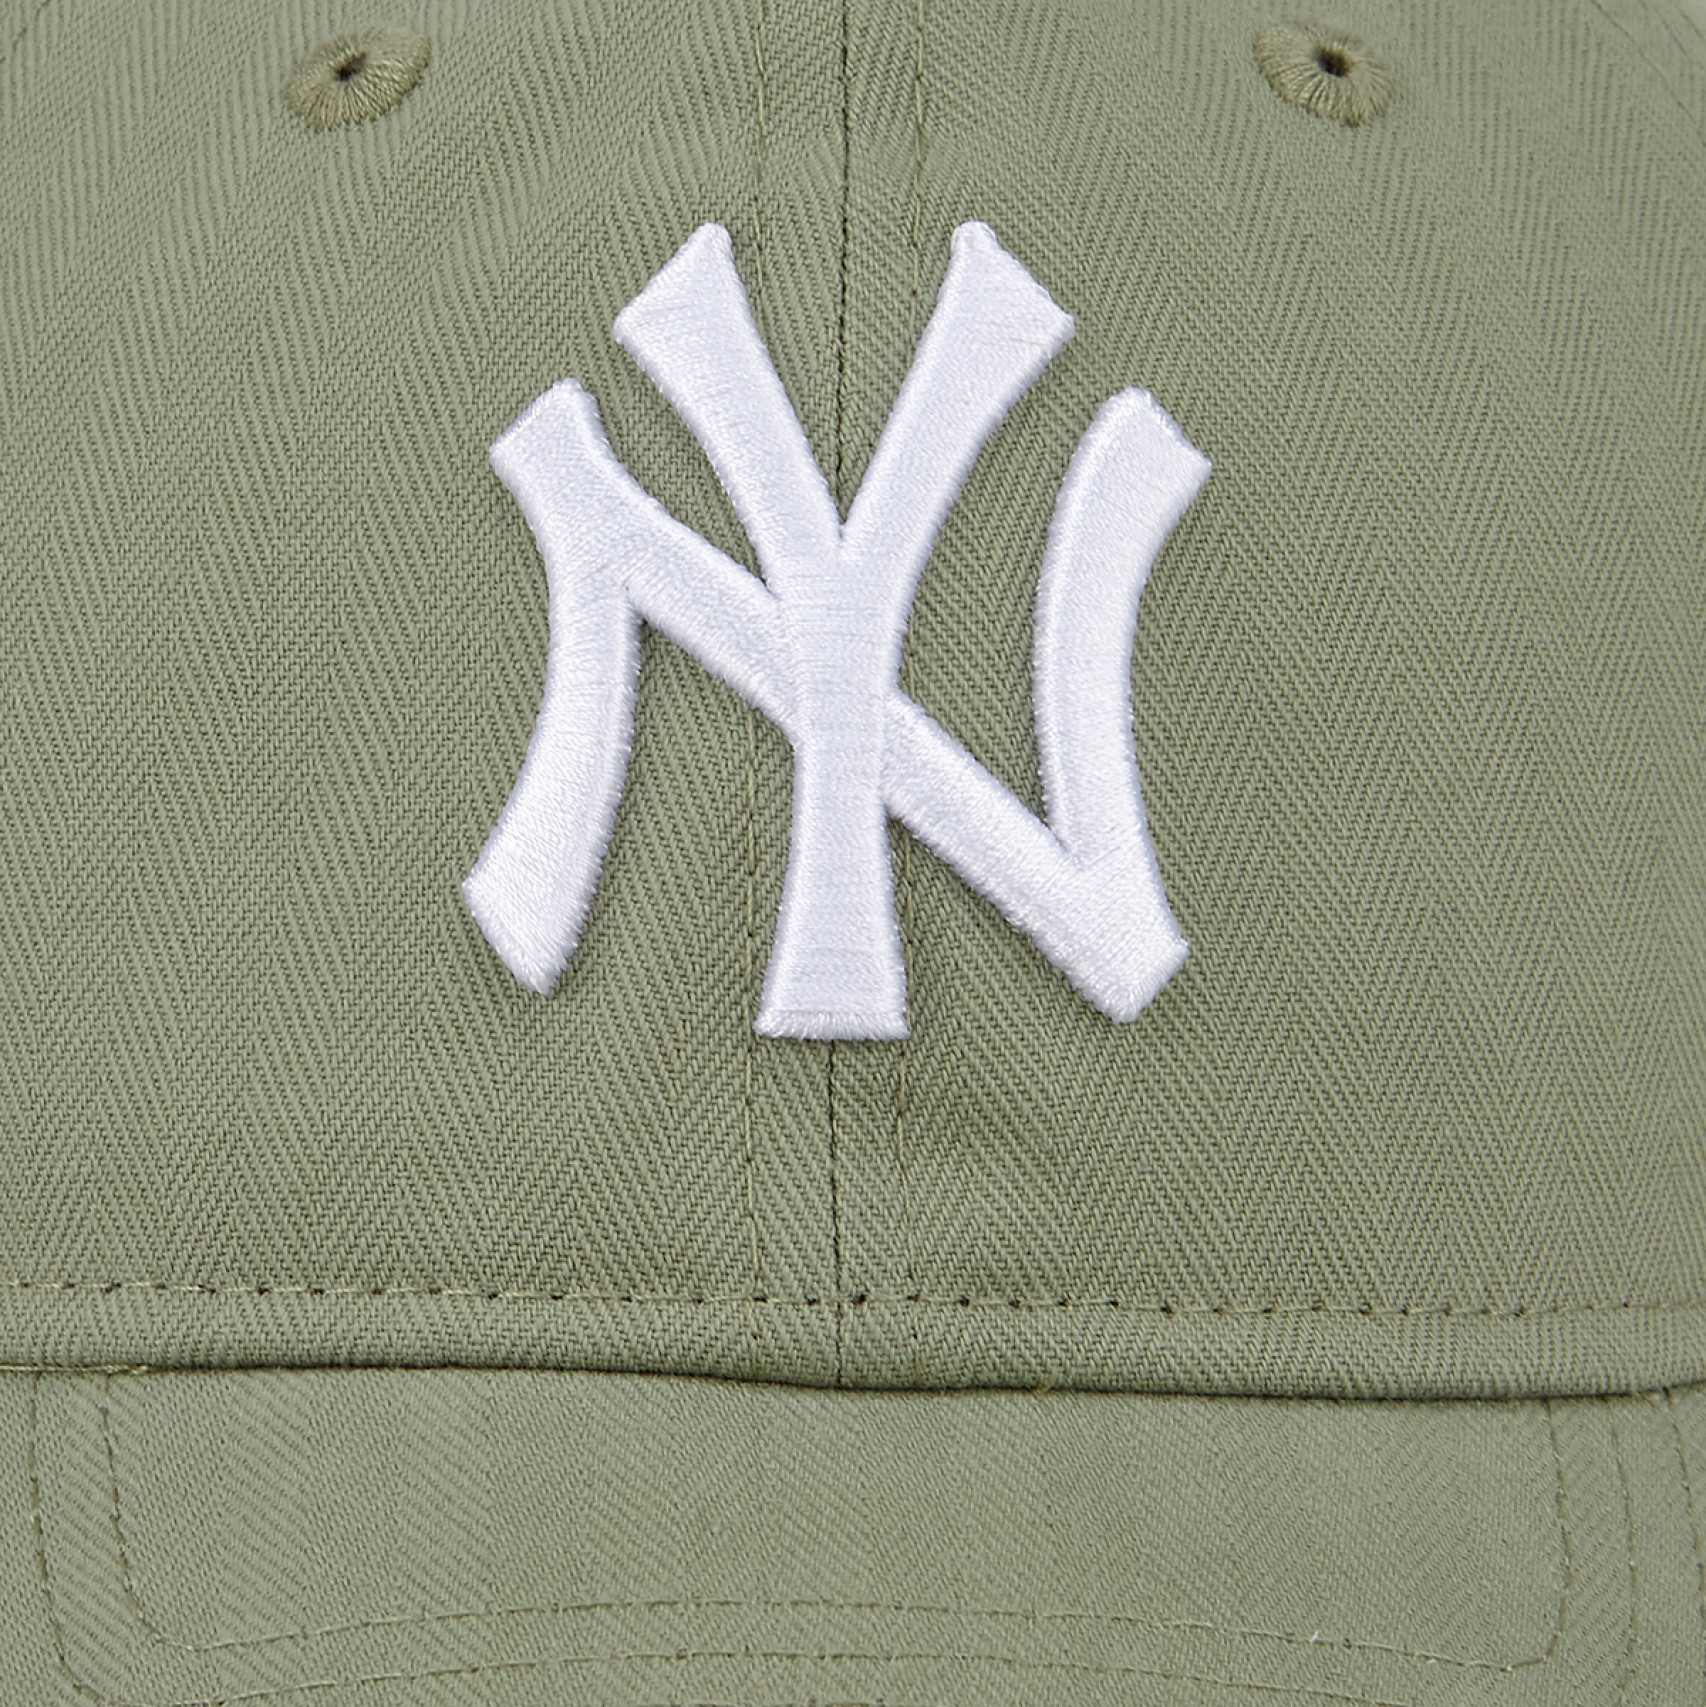 MLB 뉴욕 양키스 빈티지 헤링본 언스트럭쳐 볼캡 애플 그린 / 14205935